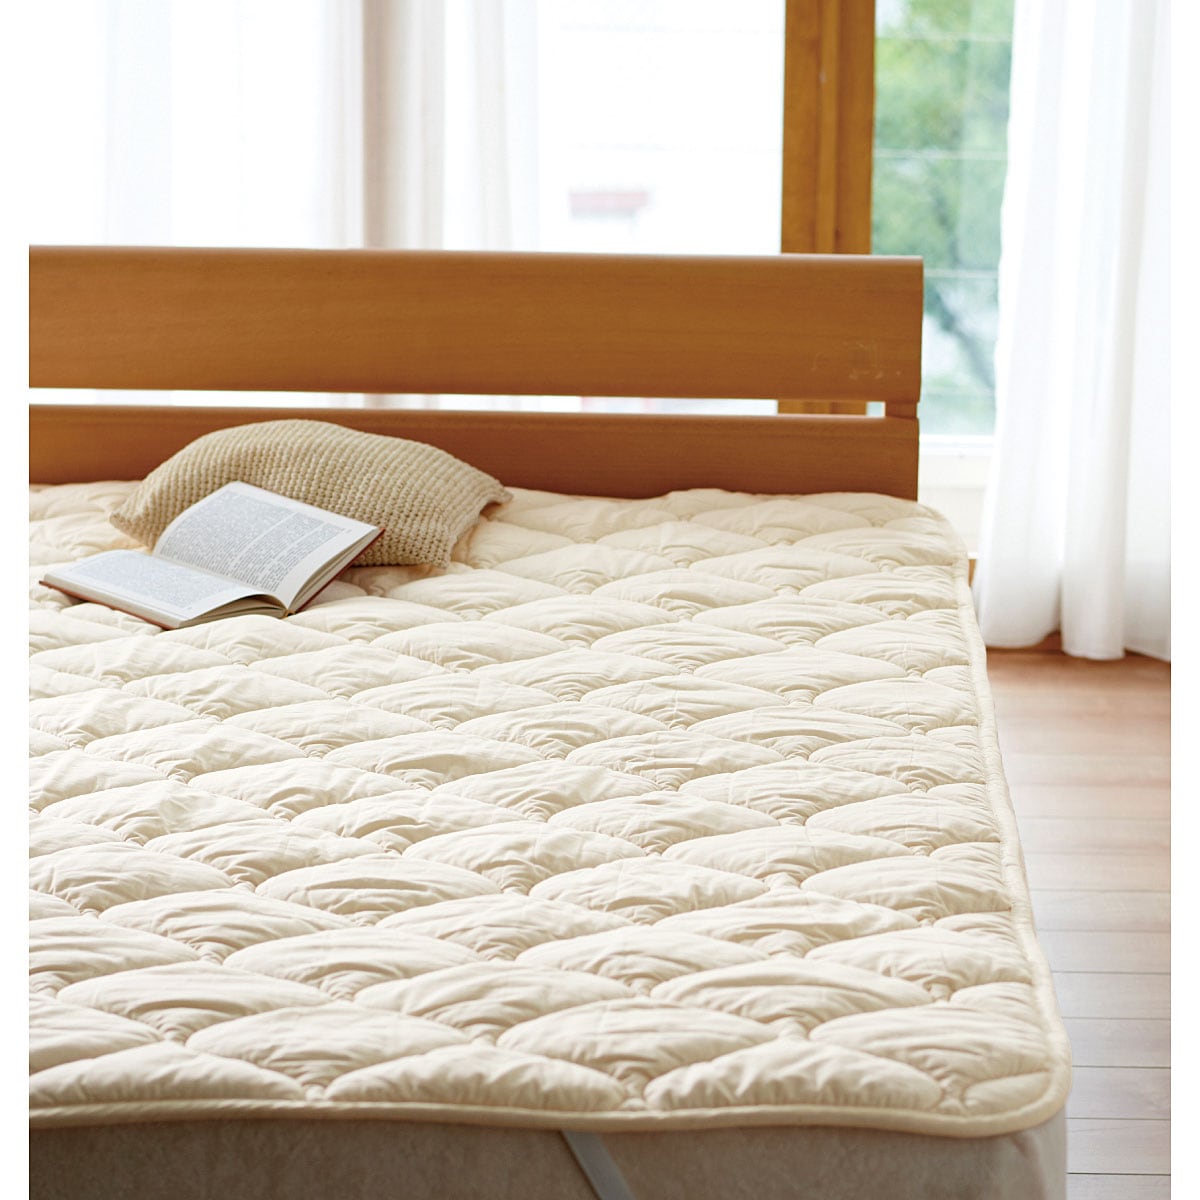 ベッドパッド(洗える羊毛100%) - 寝具の通販ならセシール(cecile)